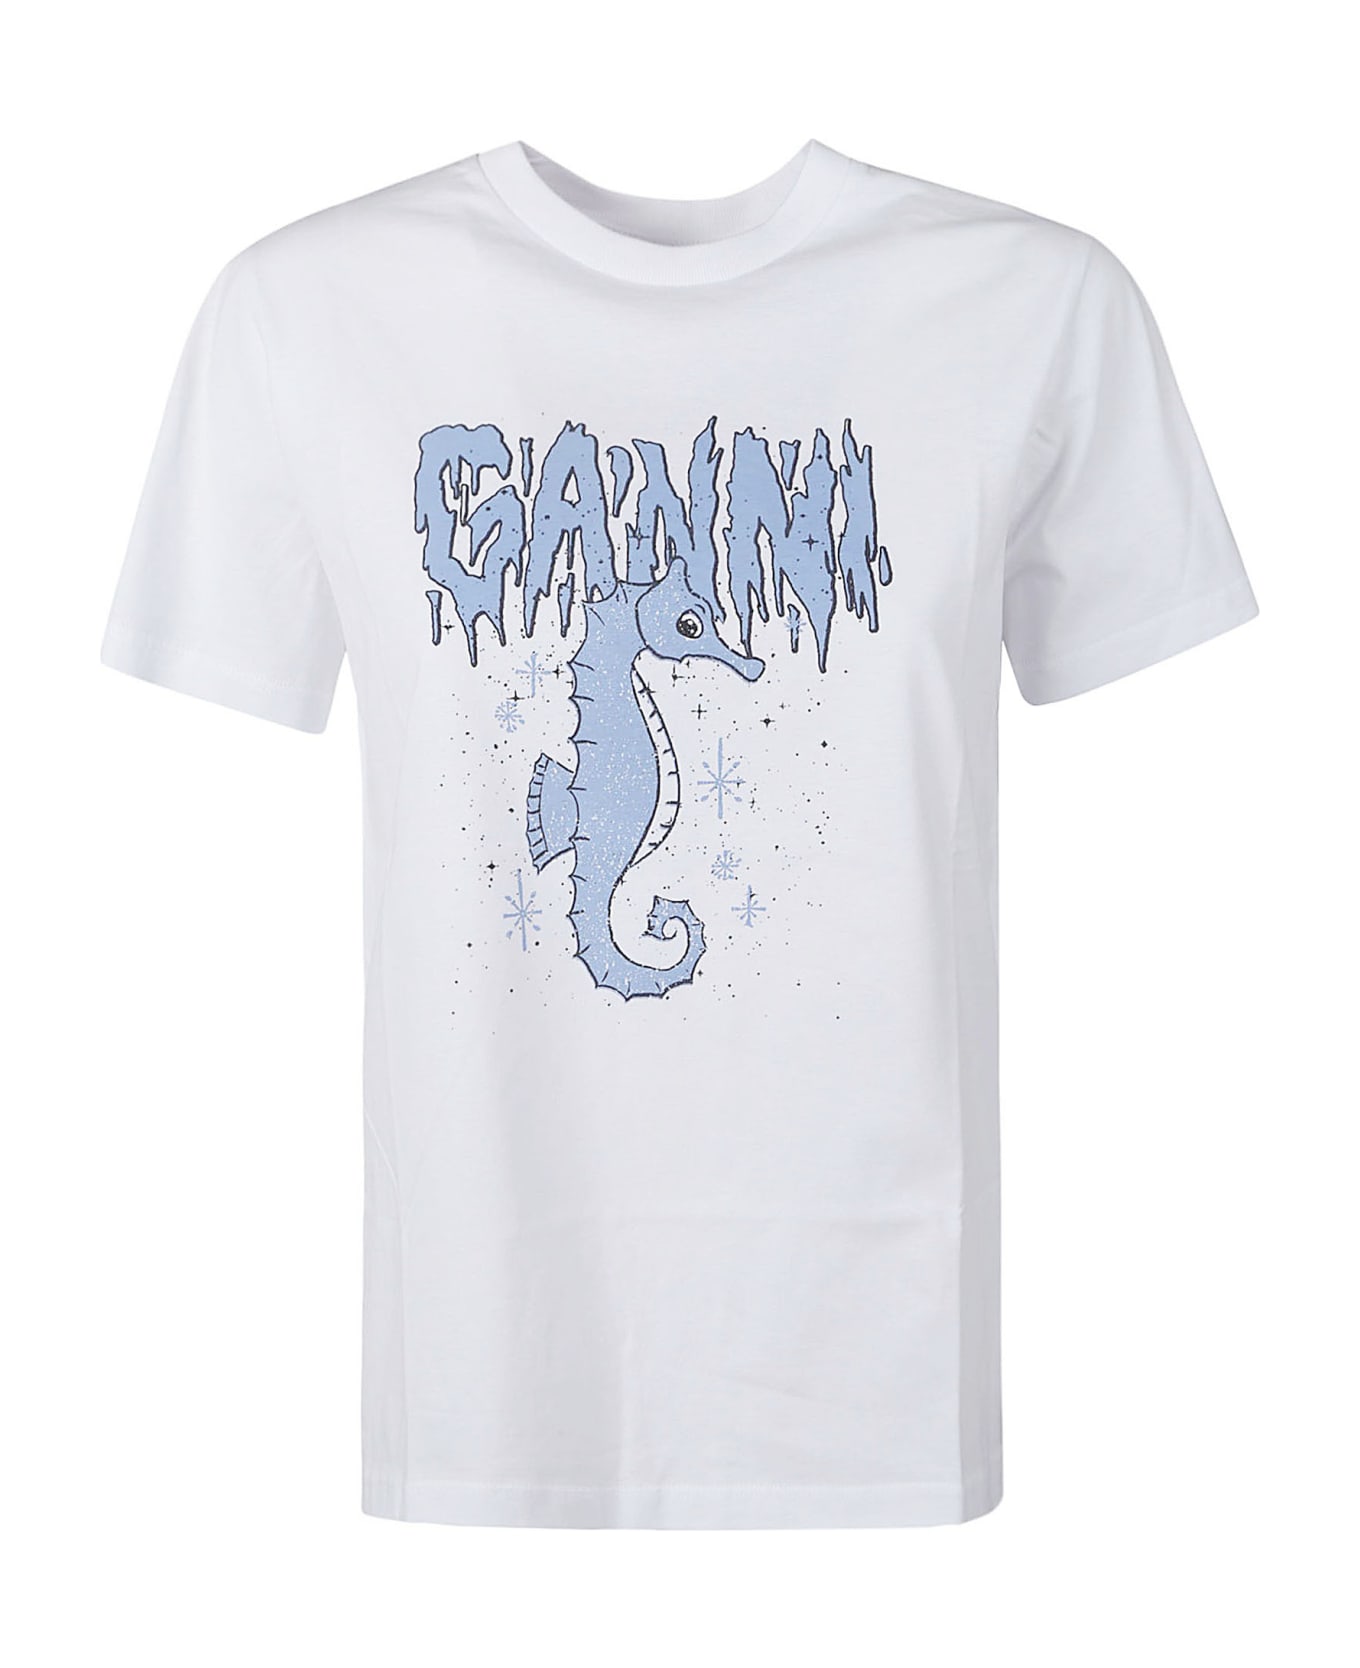 Ganni Logo Print Regular T-shirt - Bright White Tシャツ